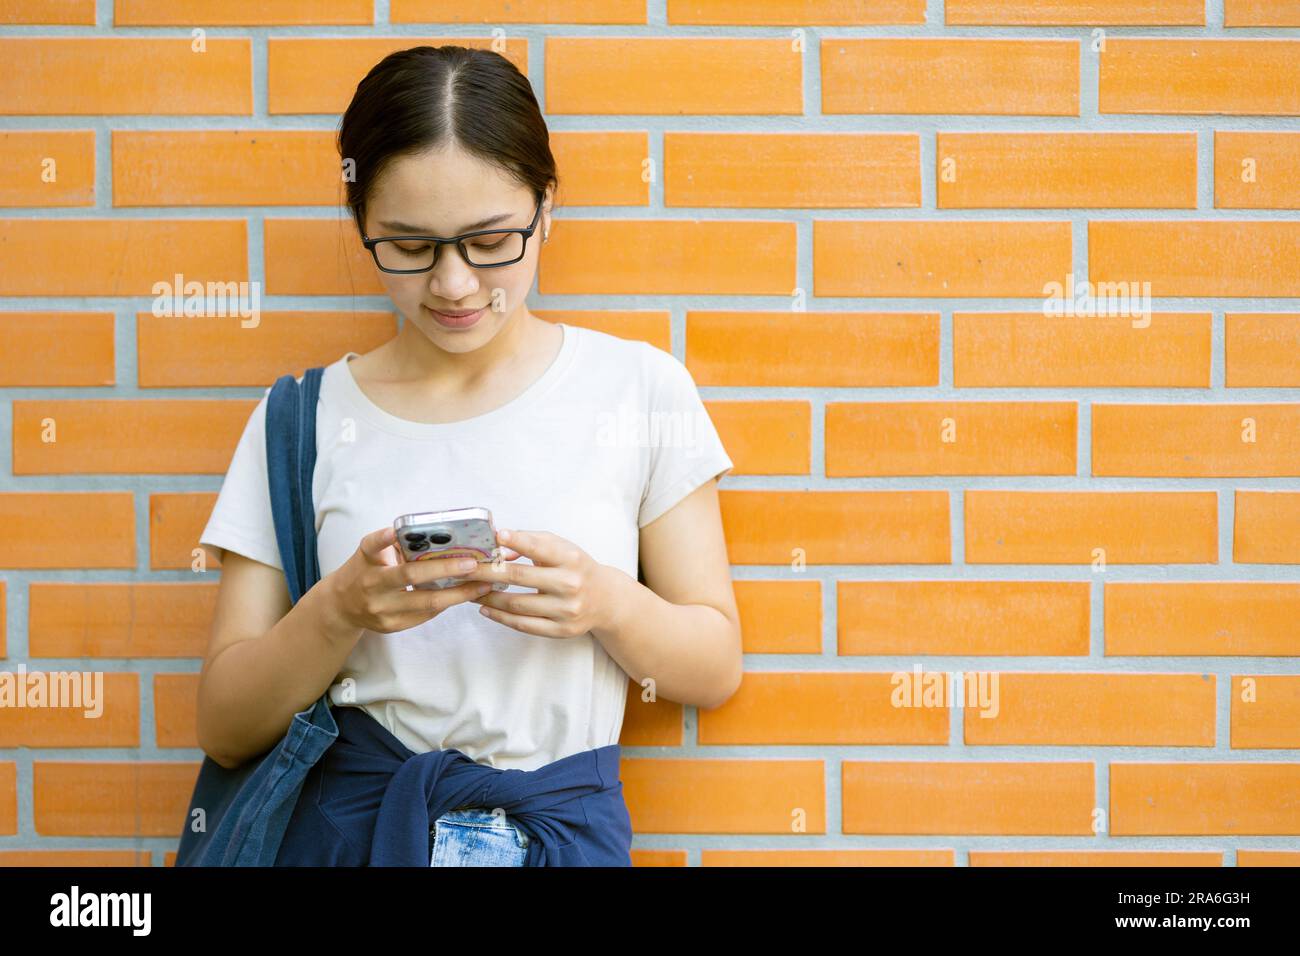 Estudiante universitario adolescente asiático disfruta jugando el contacto del mensaje del smartphone con los amigos. Foto de stock